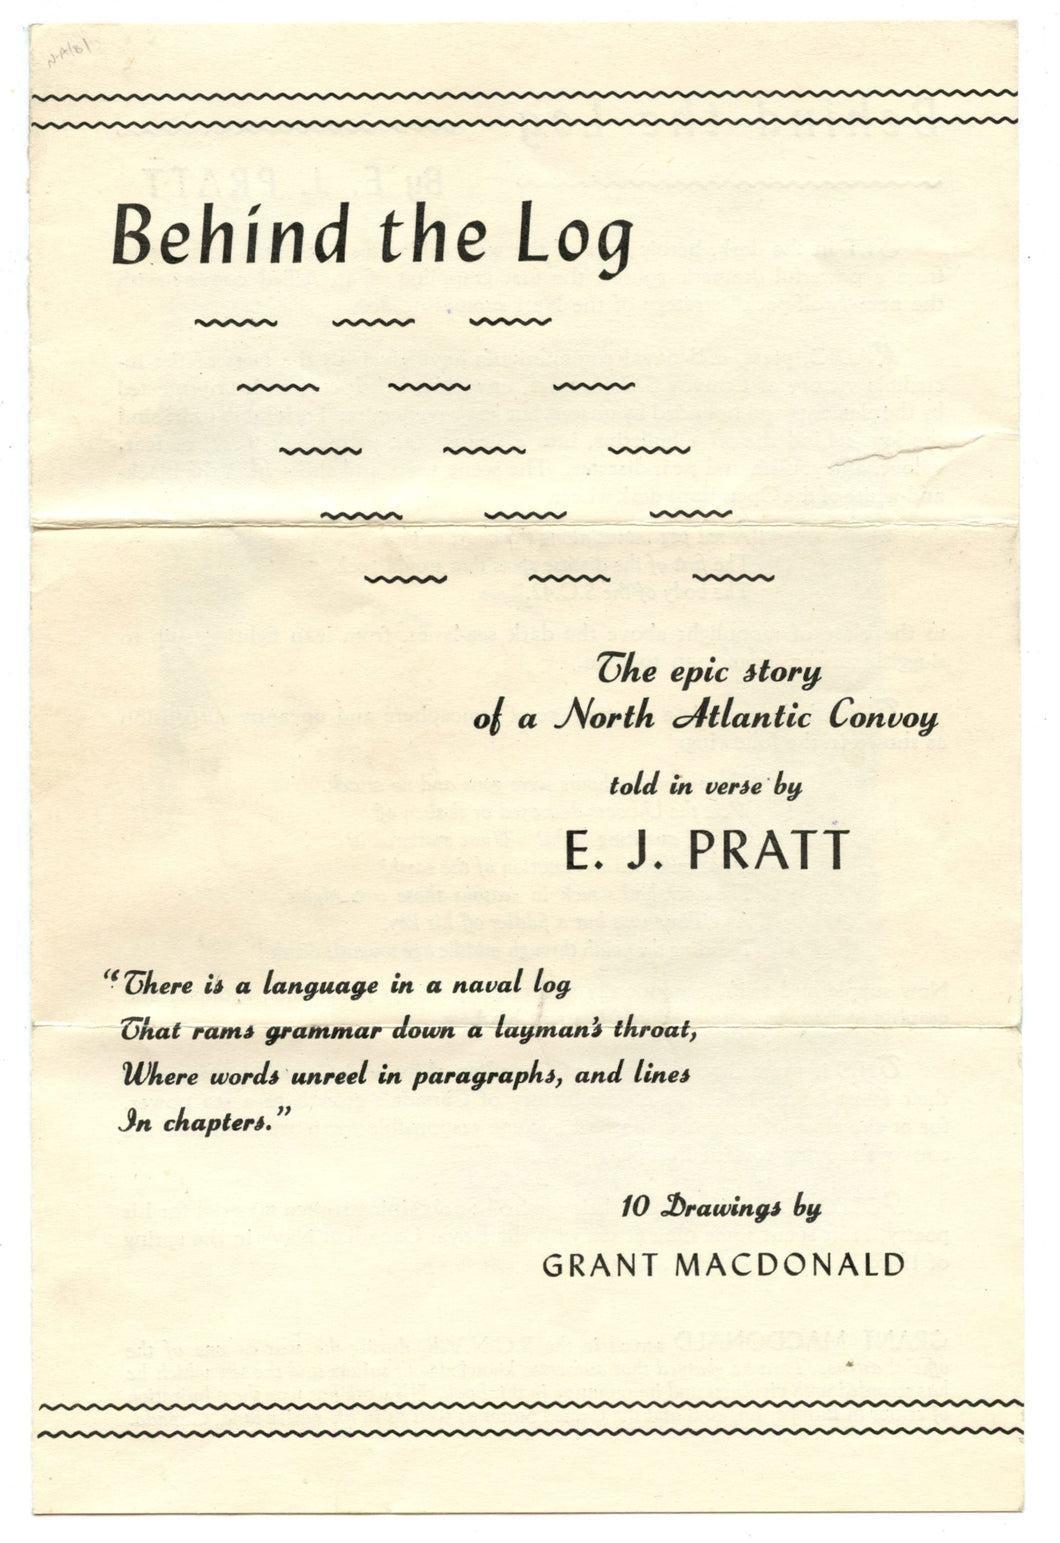 Promotional flyer for E. J. Pratt's "Behind the Log"